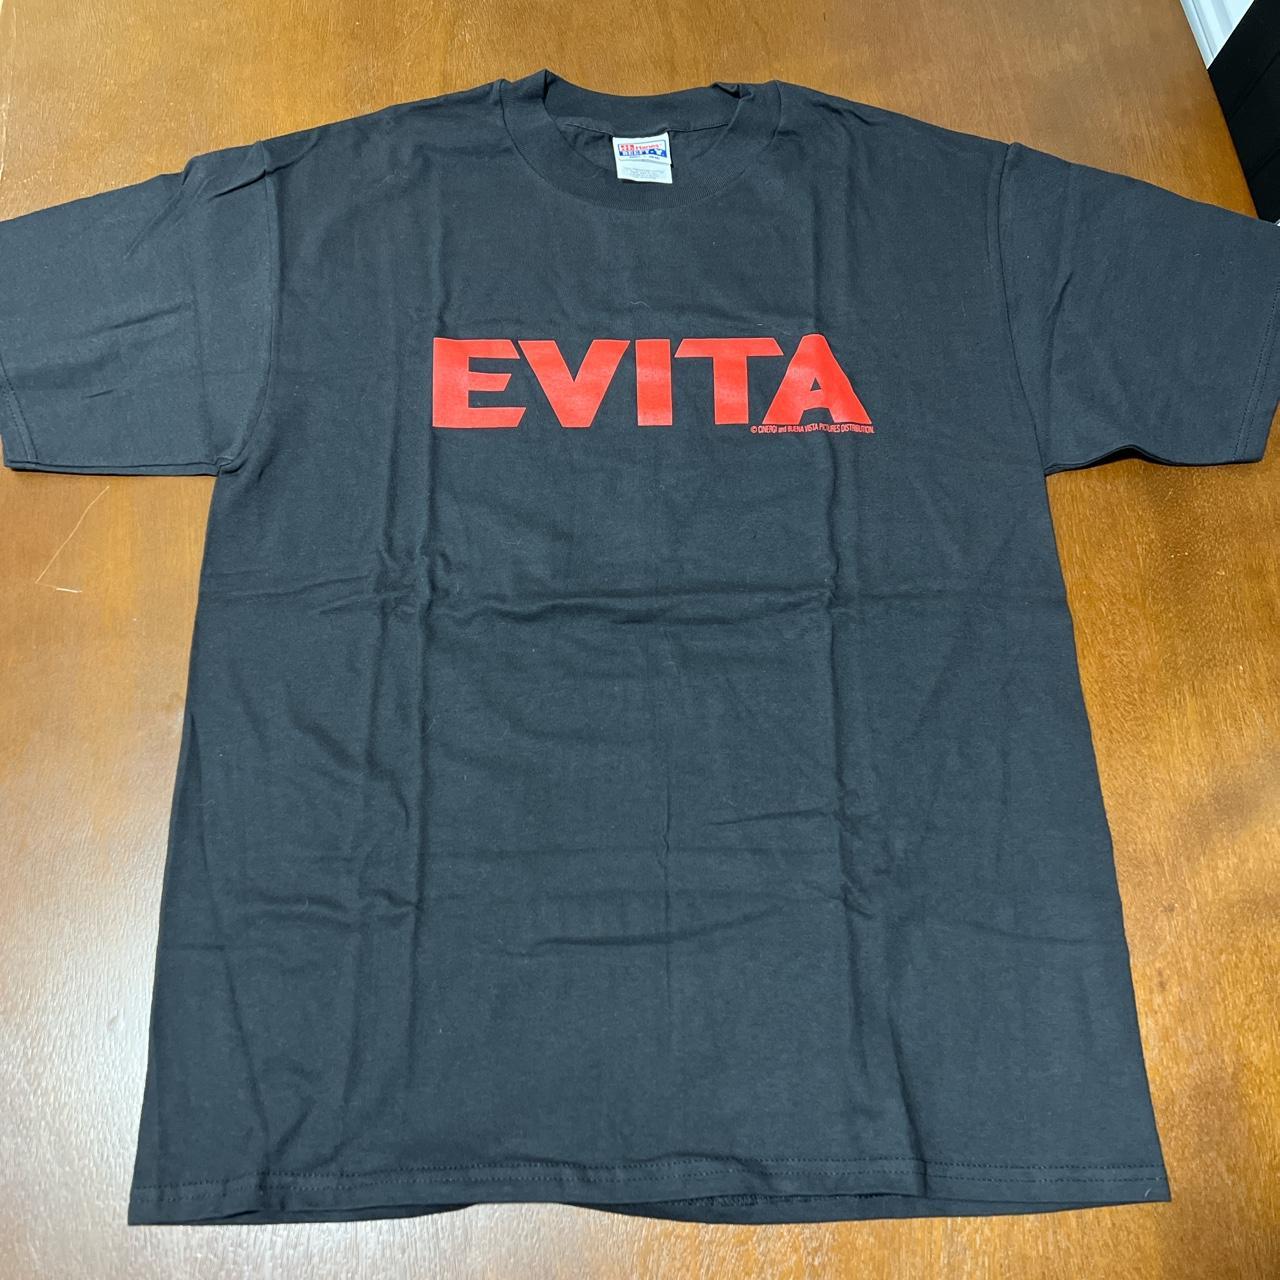 Evita movie promotion Vtg shirt 